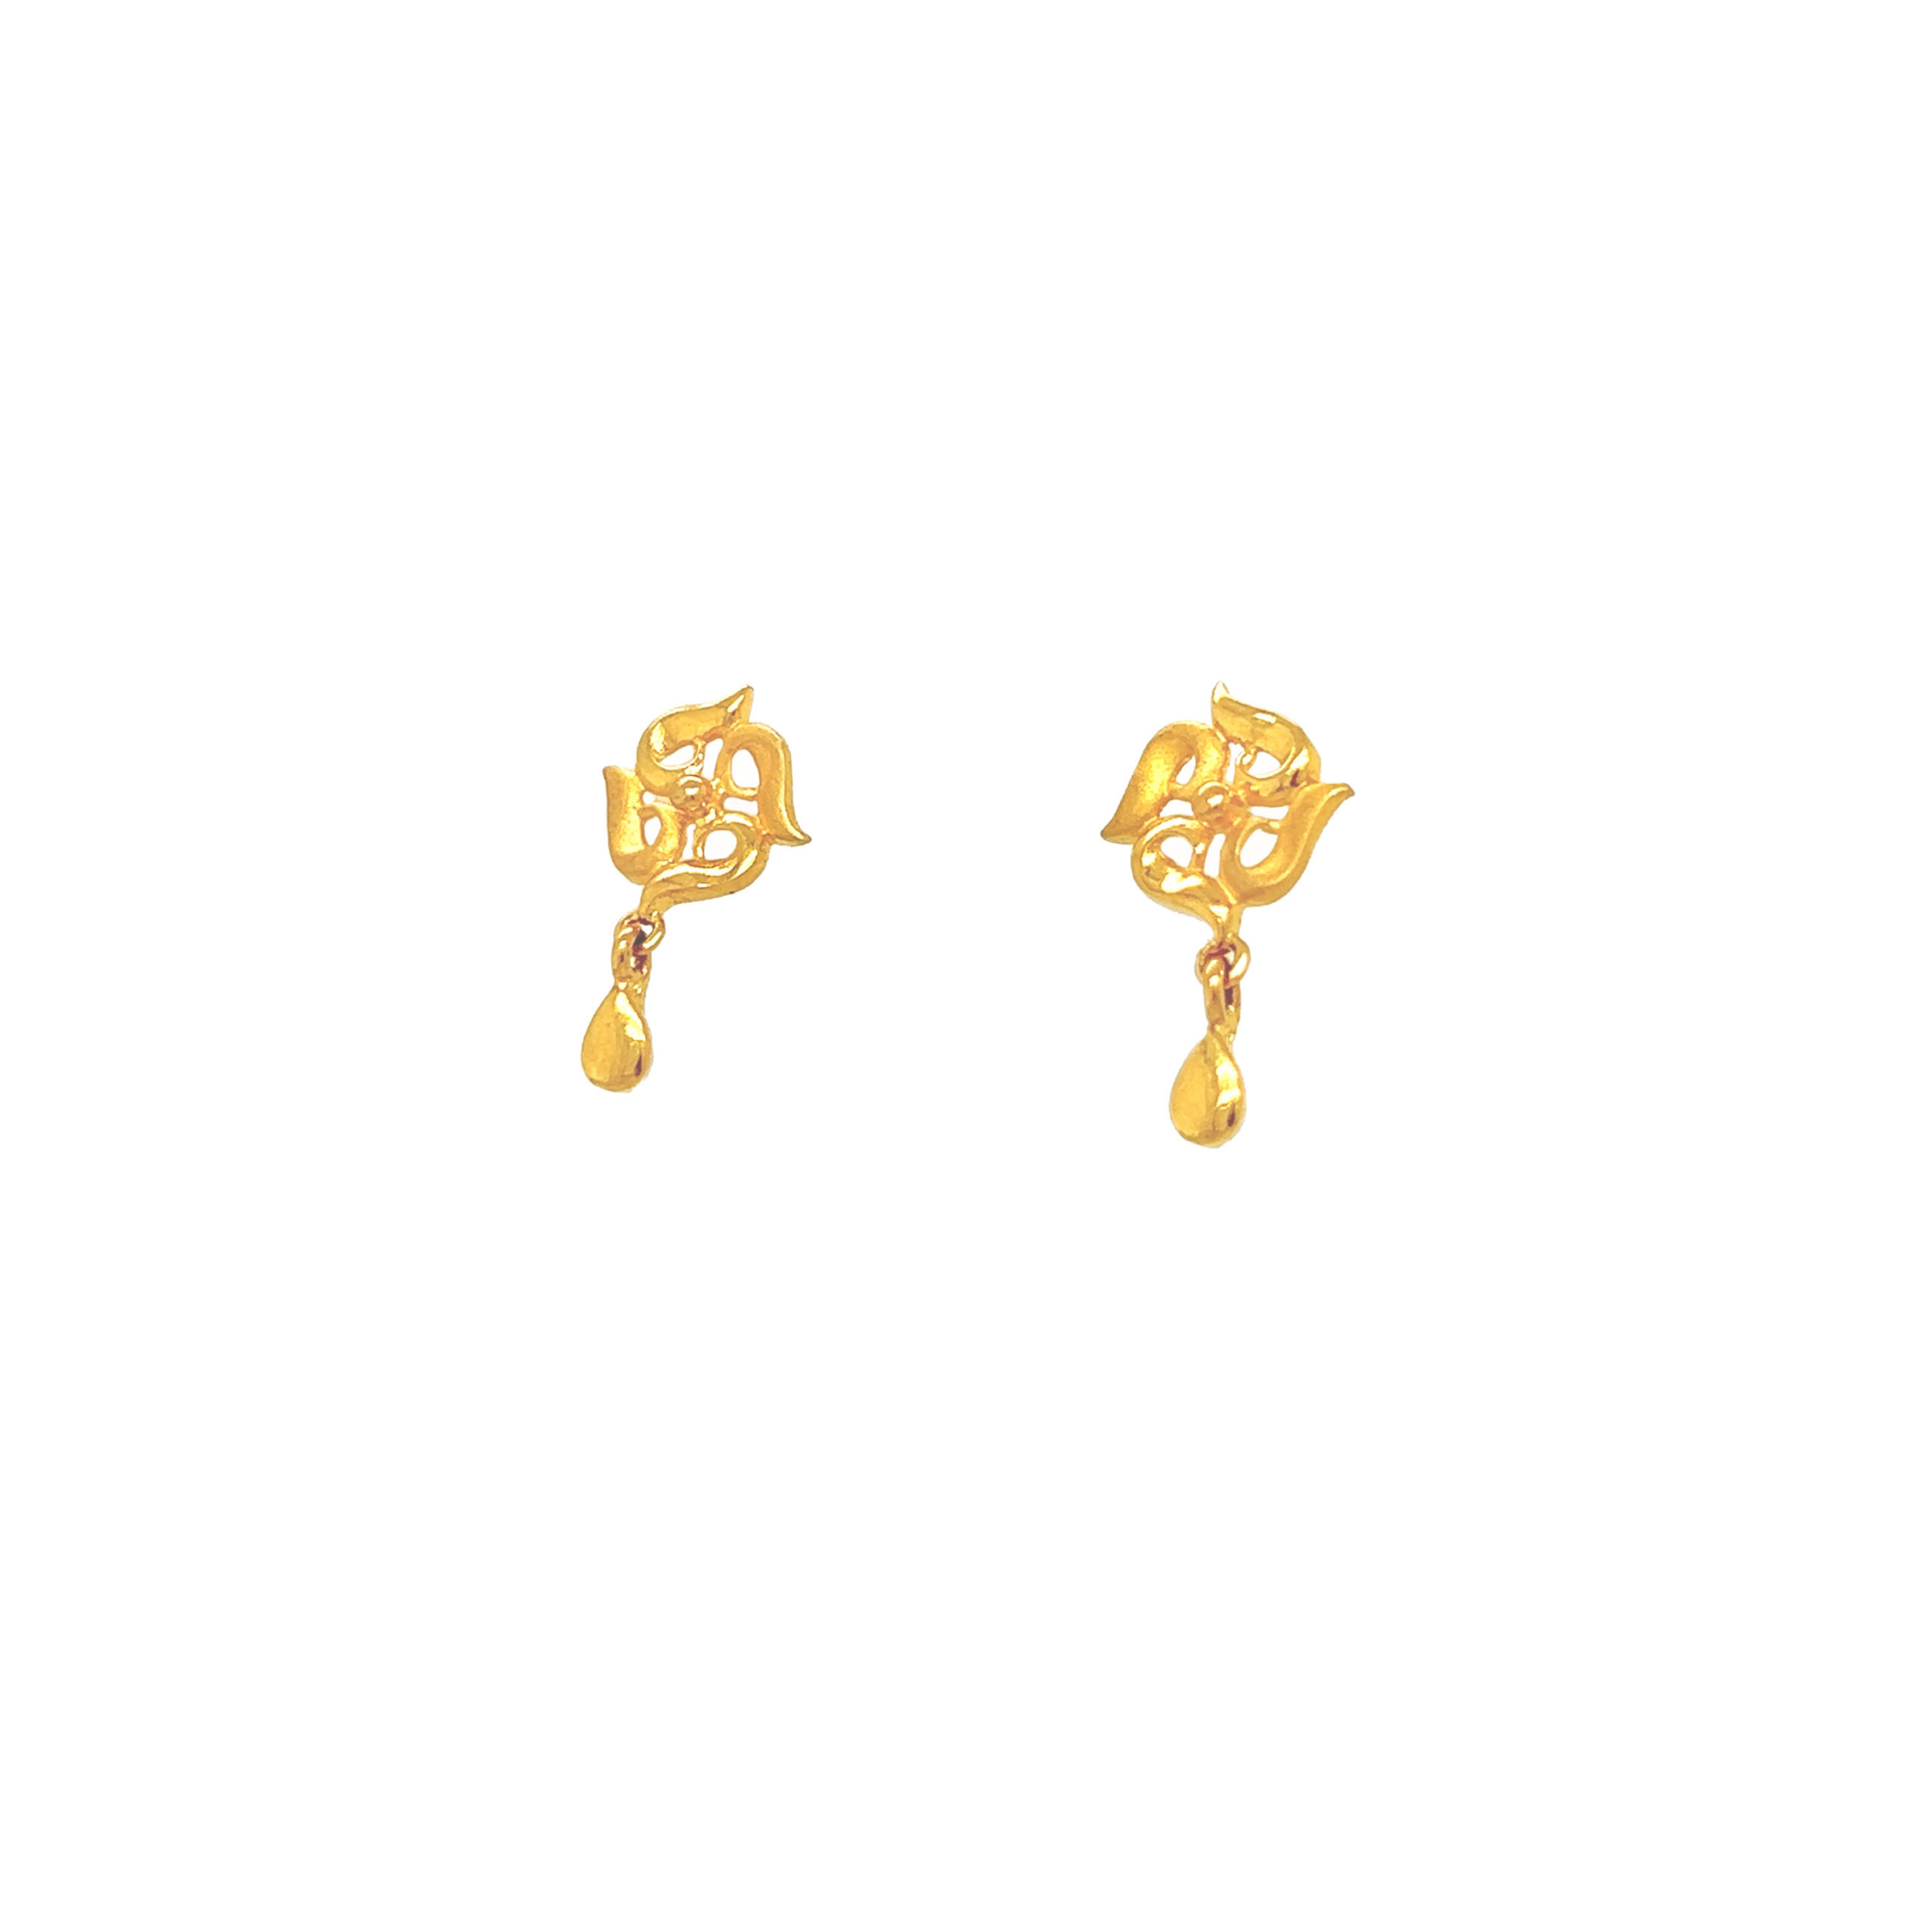 22ct Yellow Gold Flower Design Ladies Stud Earrings 2.1 Grams - Etsy Norway